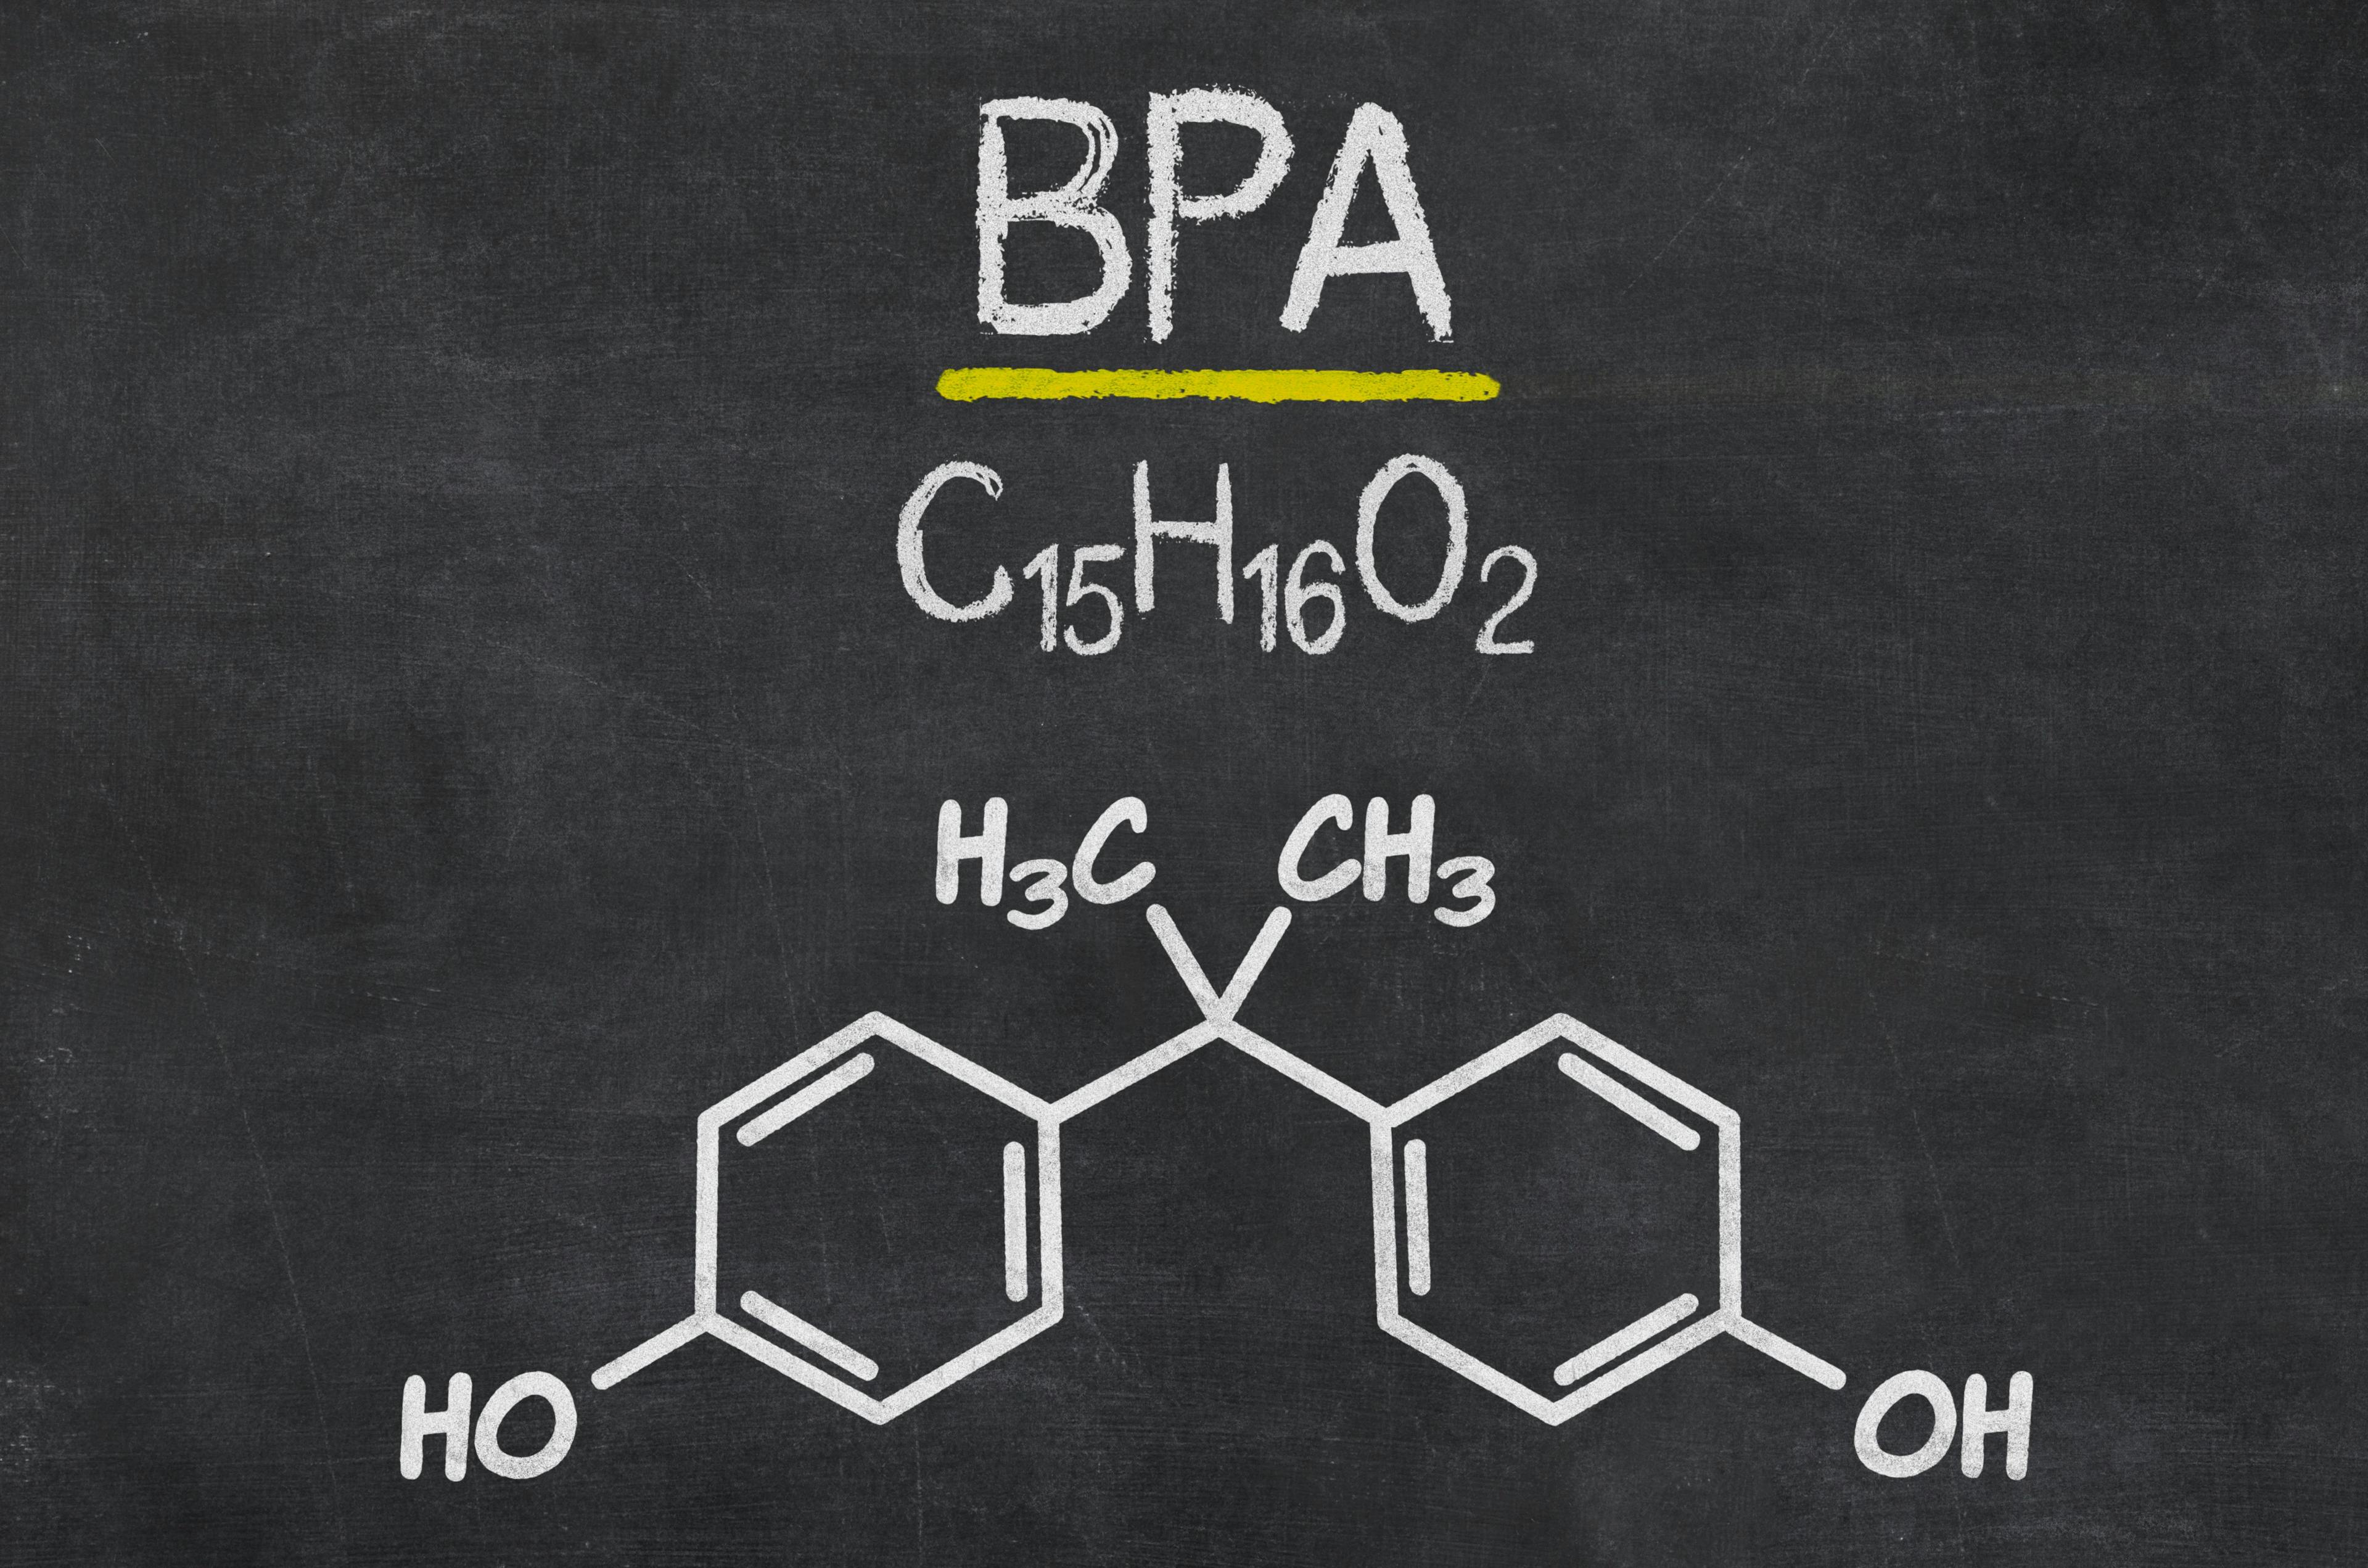 Schiefertafel mit der chemischen Formel von BPA | Image Credit: © Zerbor - stock.adobe.com